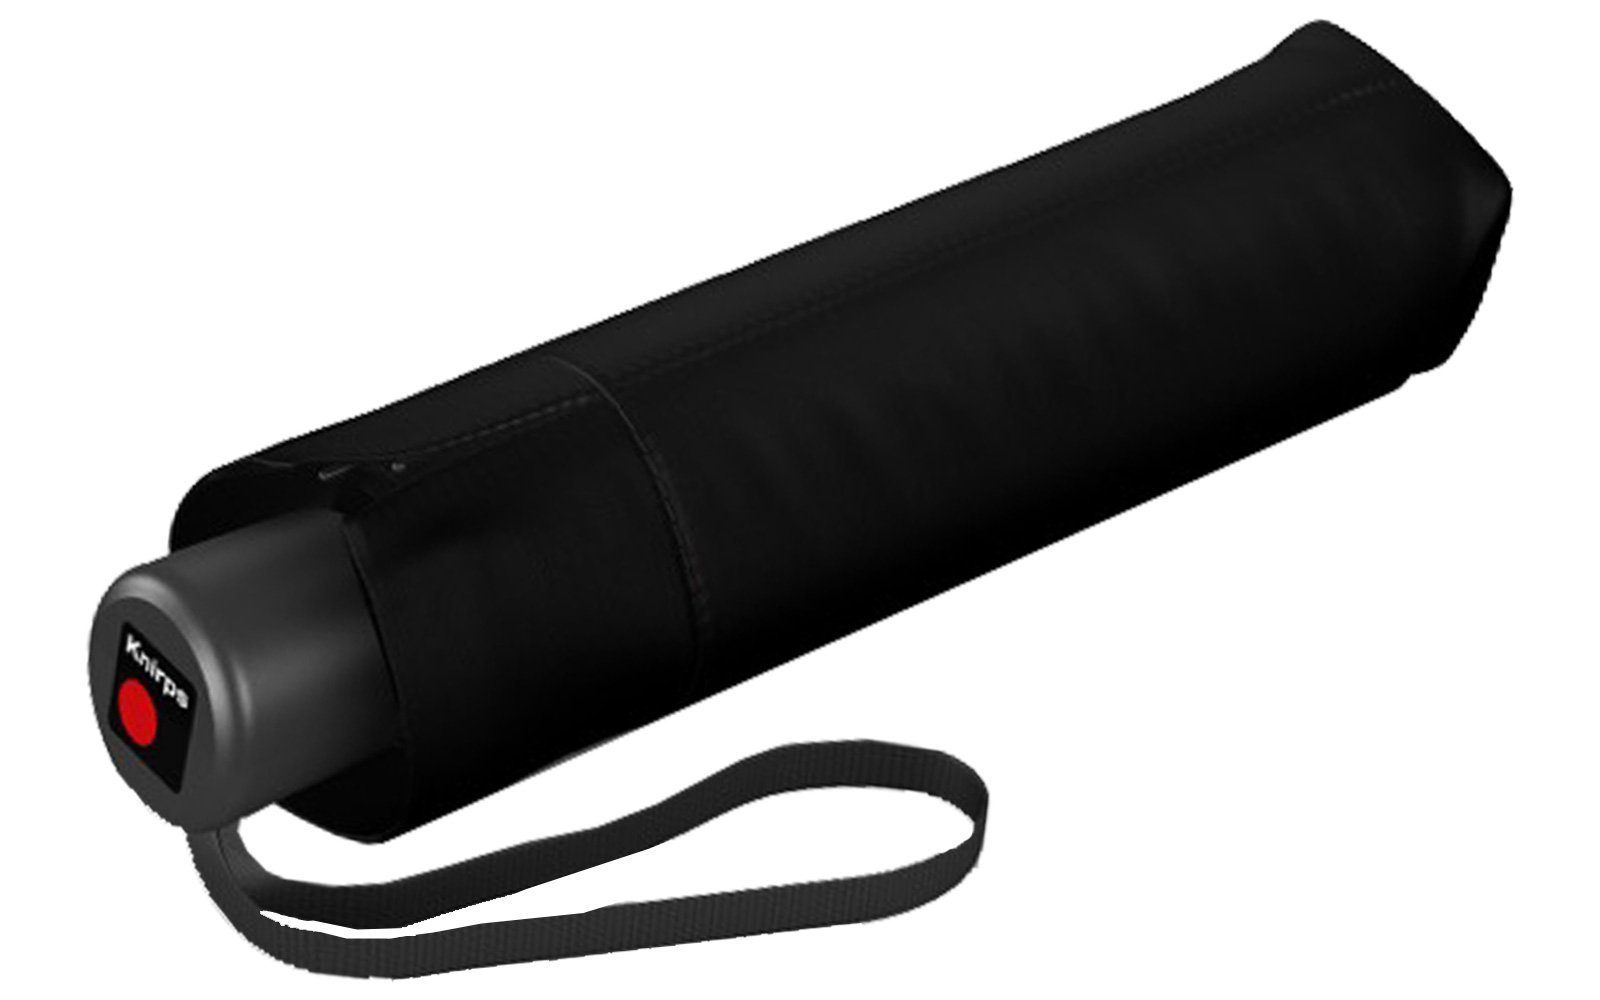 und Manual, Medium schwarz Knirps® A.050 stabil Taschenregenschirm leicht